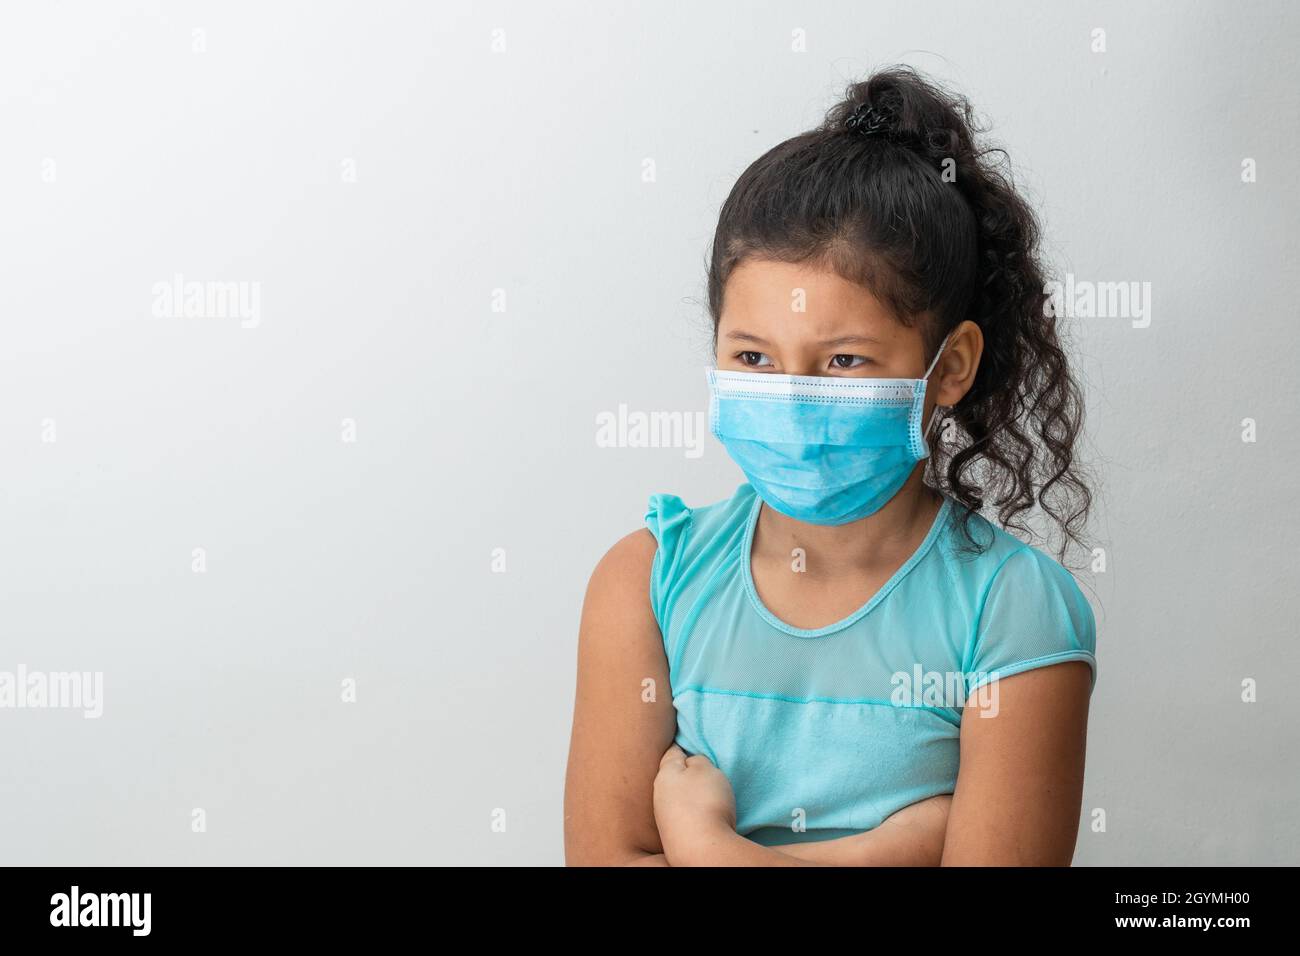 bambina (8 anni) seduta con le braccia incrociate, ragazza marrone arrabbiata con una maschera chirurgica blu. Concetto medico, farmaceutico e sanitario. Foto Stock